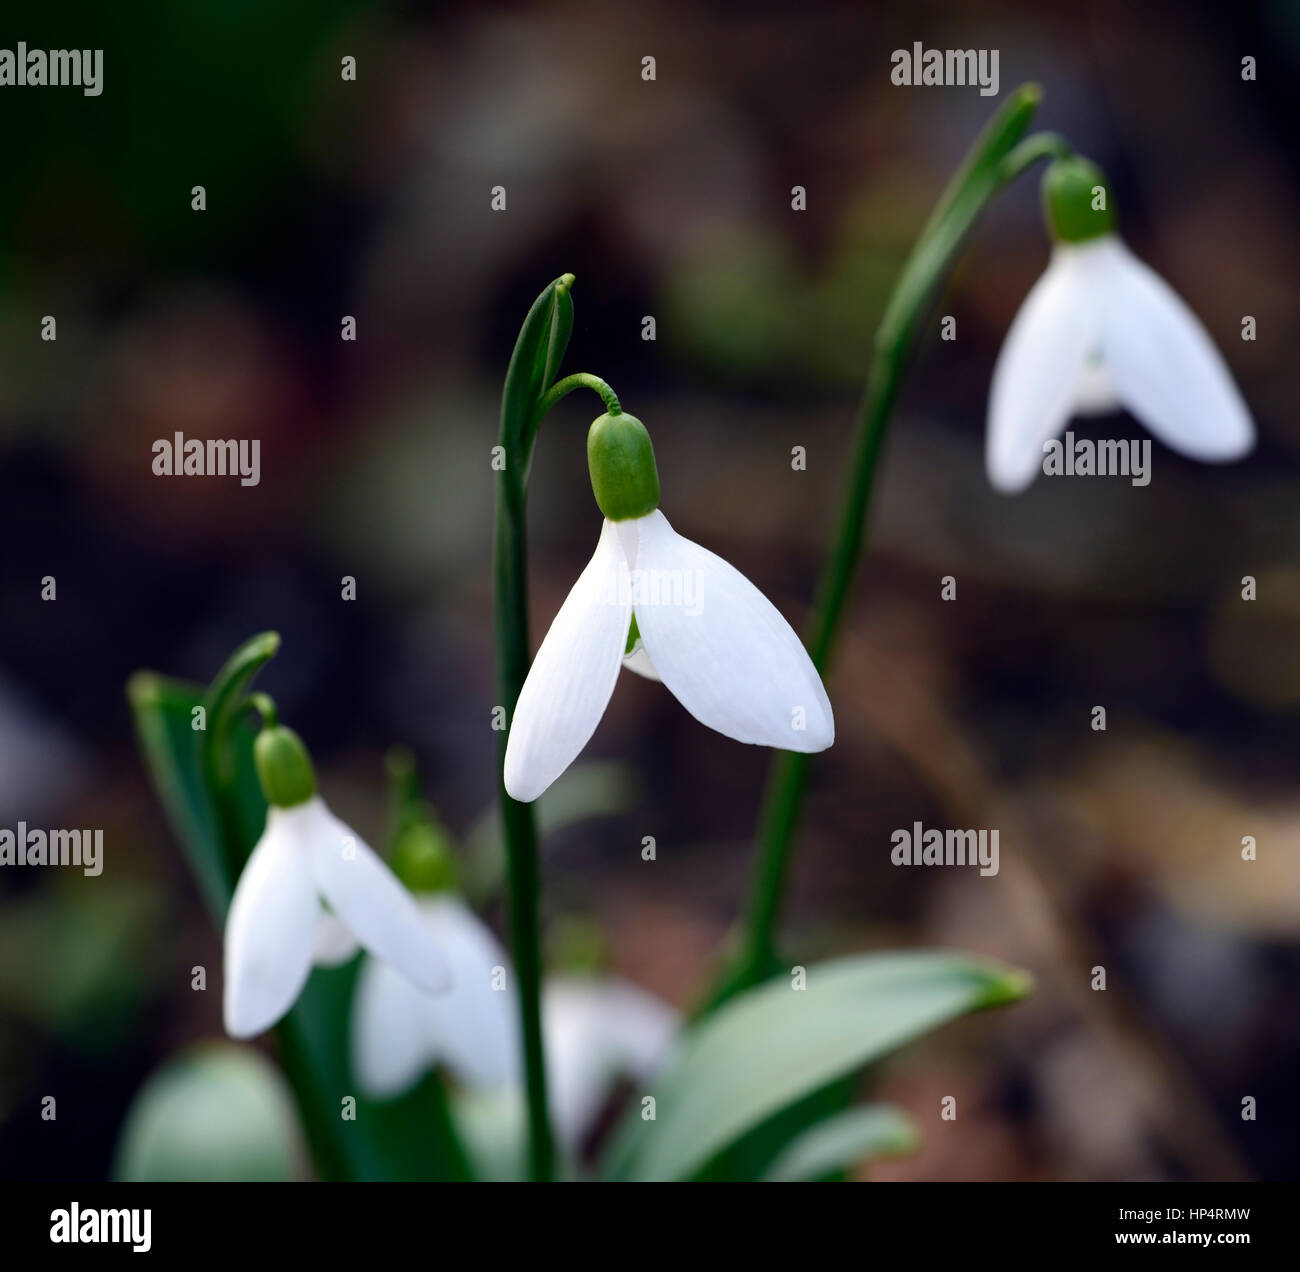 Galanthus x allenii, snowdrop, snowdrops, spring, flower, flowers, flowering, Garden, gardens, Stock Photo